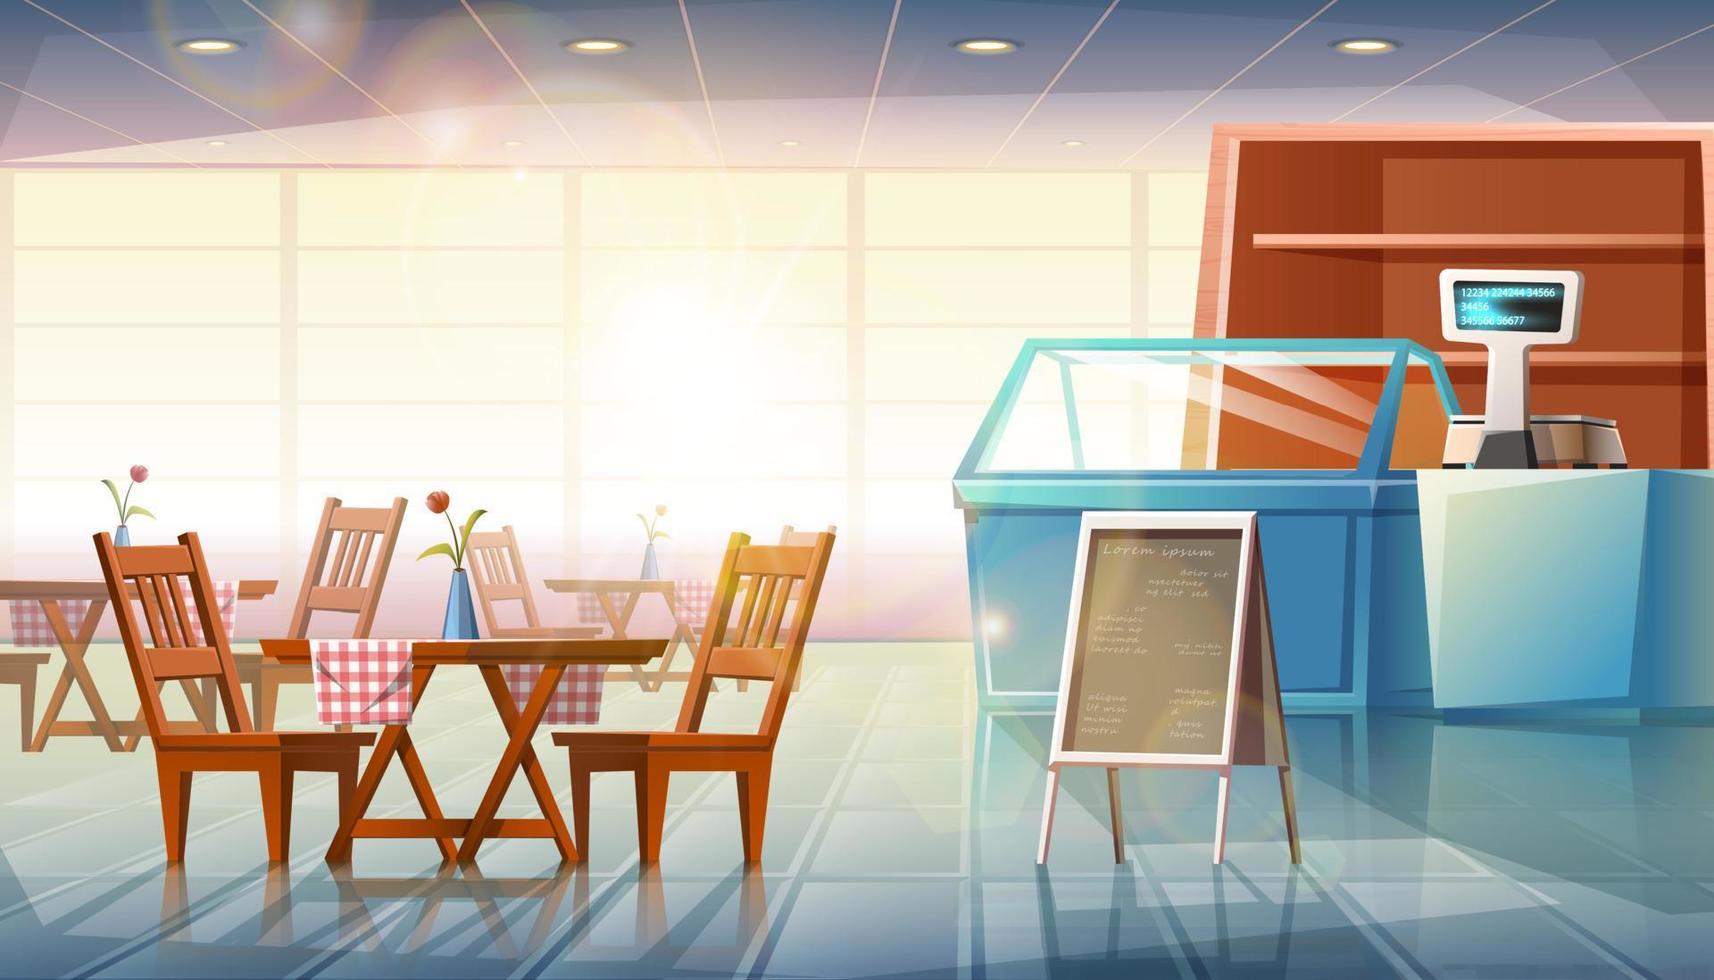 vector cartoon stijl platte illustratie van restaurant interieur met vitrines, kassier en eettafels met menustandaard.